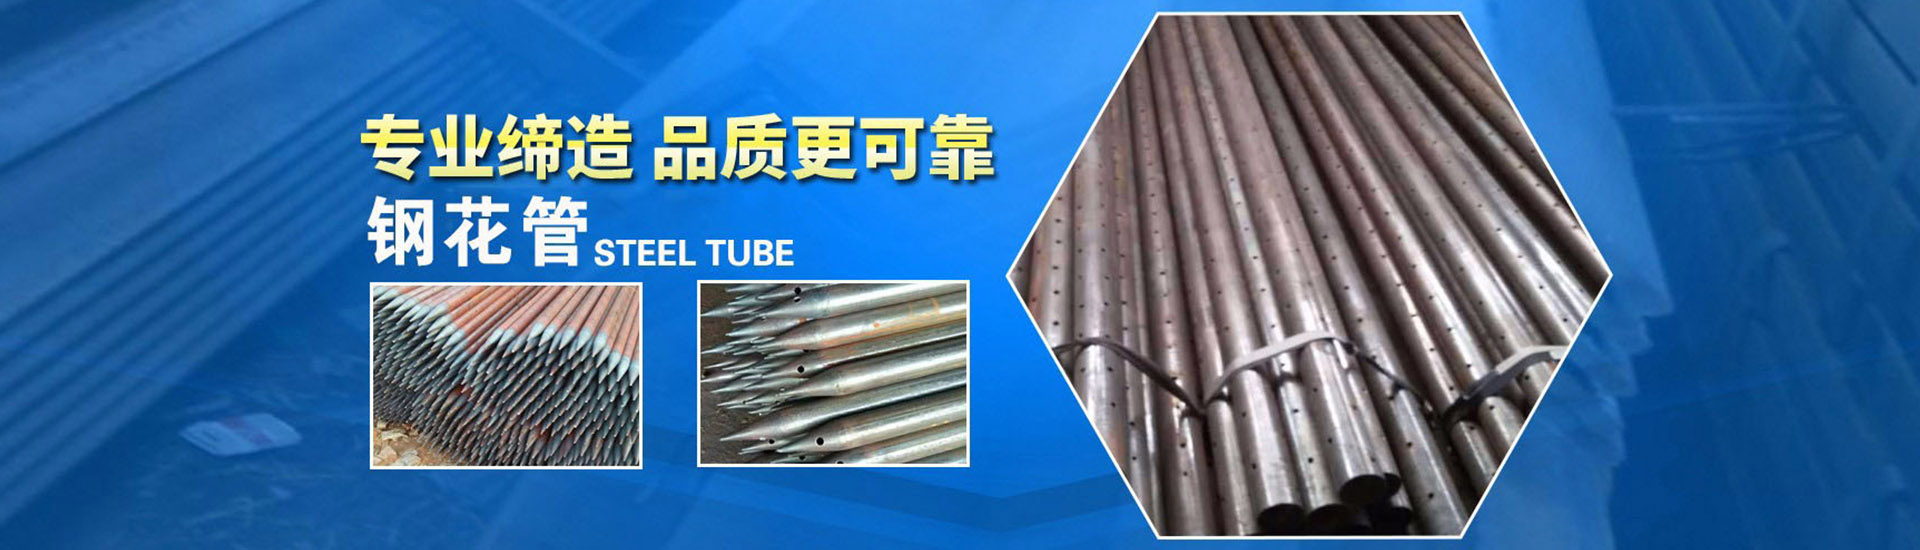 重庆隧道中空锚杆,四川地铁声测管,成都建筑螺纹钢